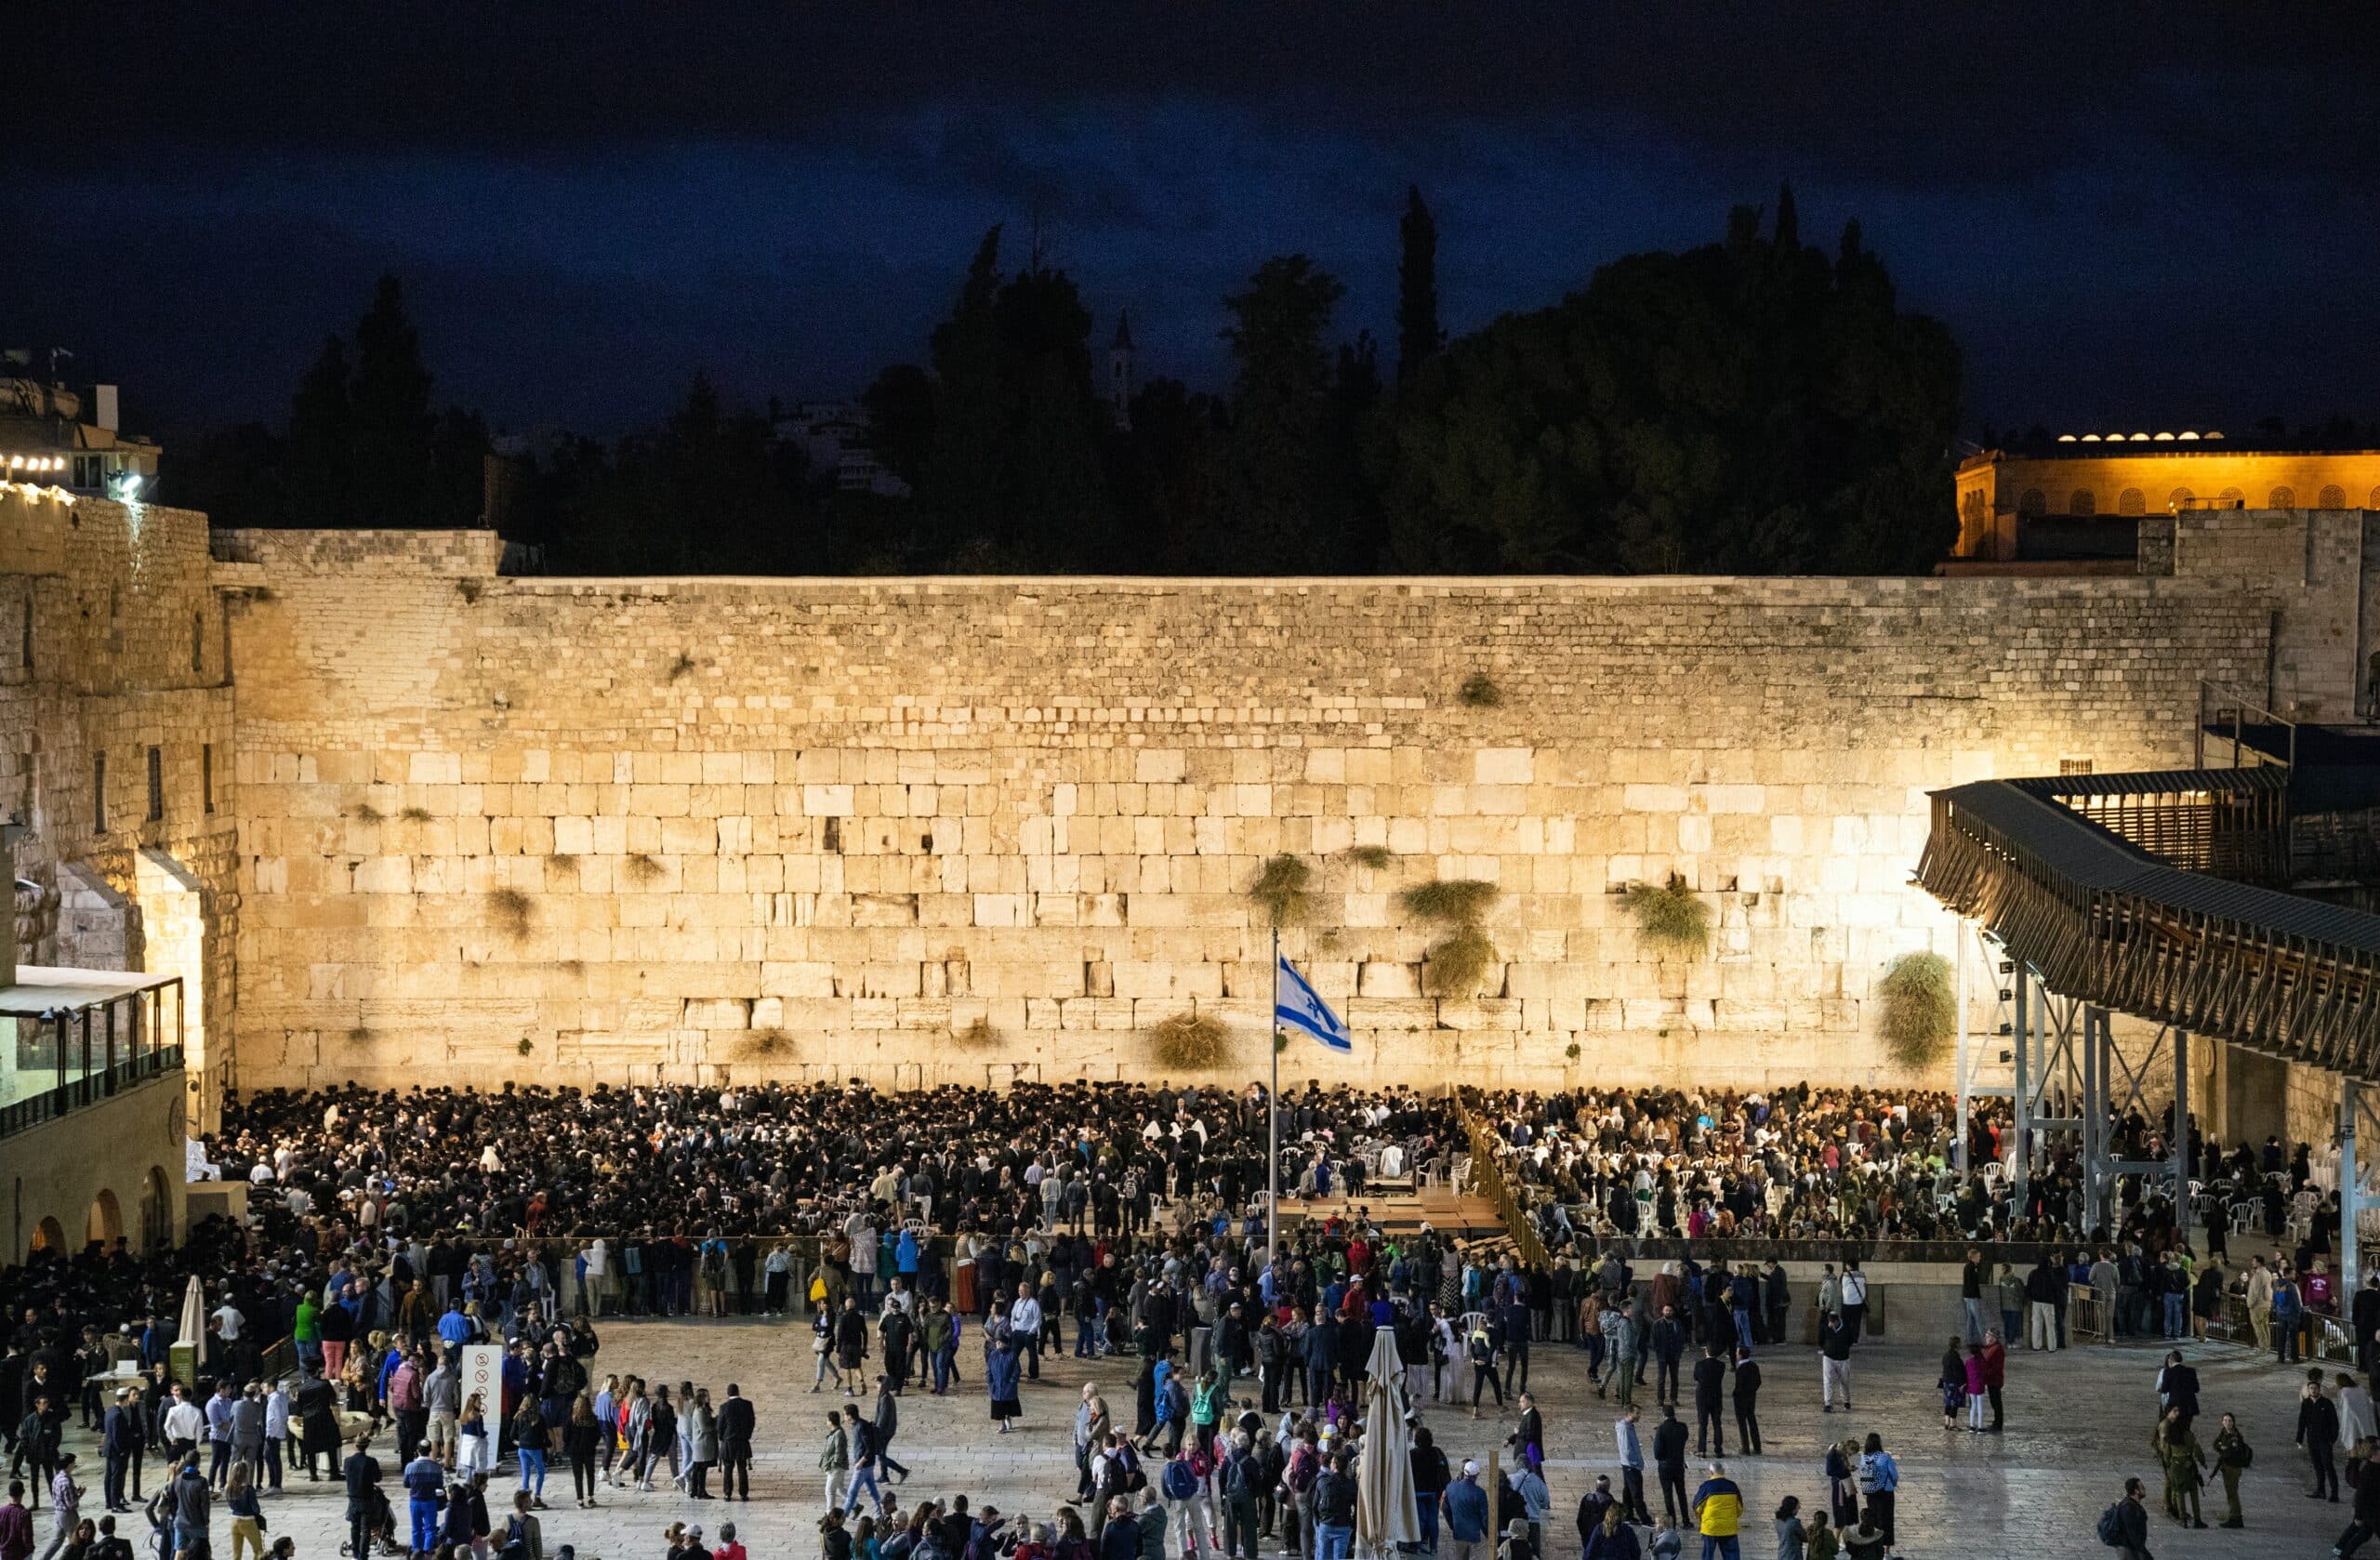 Vista a noite do Muro das Lamentações, em Jerusalém, com várias pessoas e uma bandeira do país no meio da multidão.